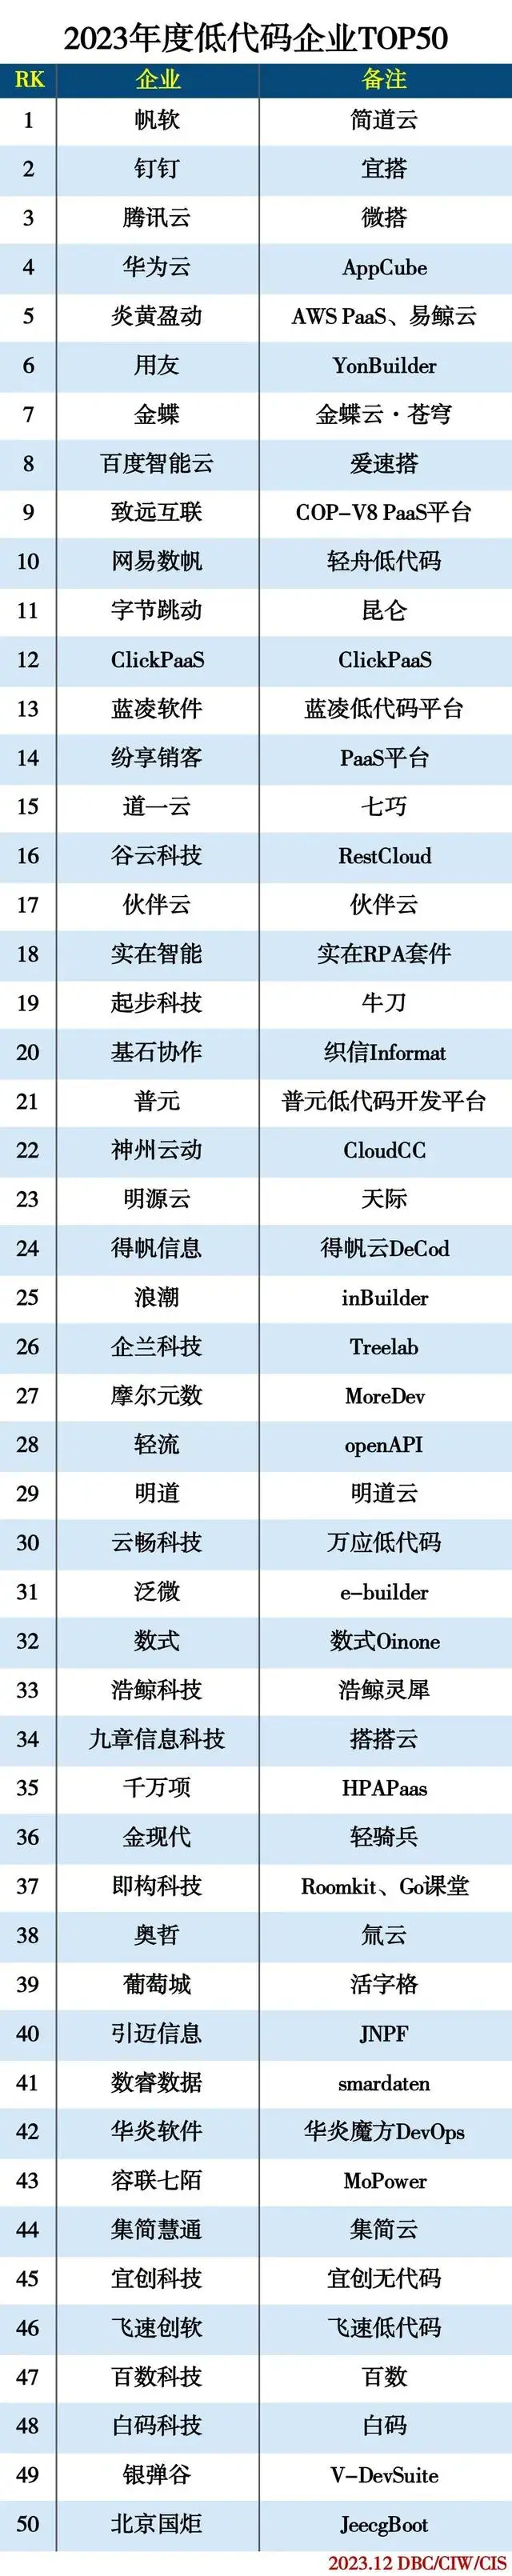 2023 年度低代码企业 TOP50 榜单公布 — JeecgBoot 连续两年荣登榜单(图4)